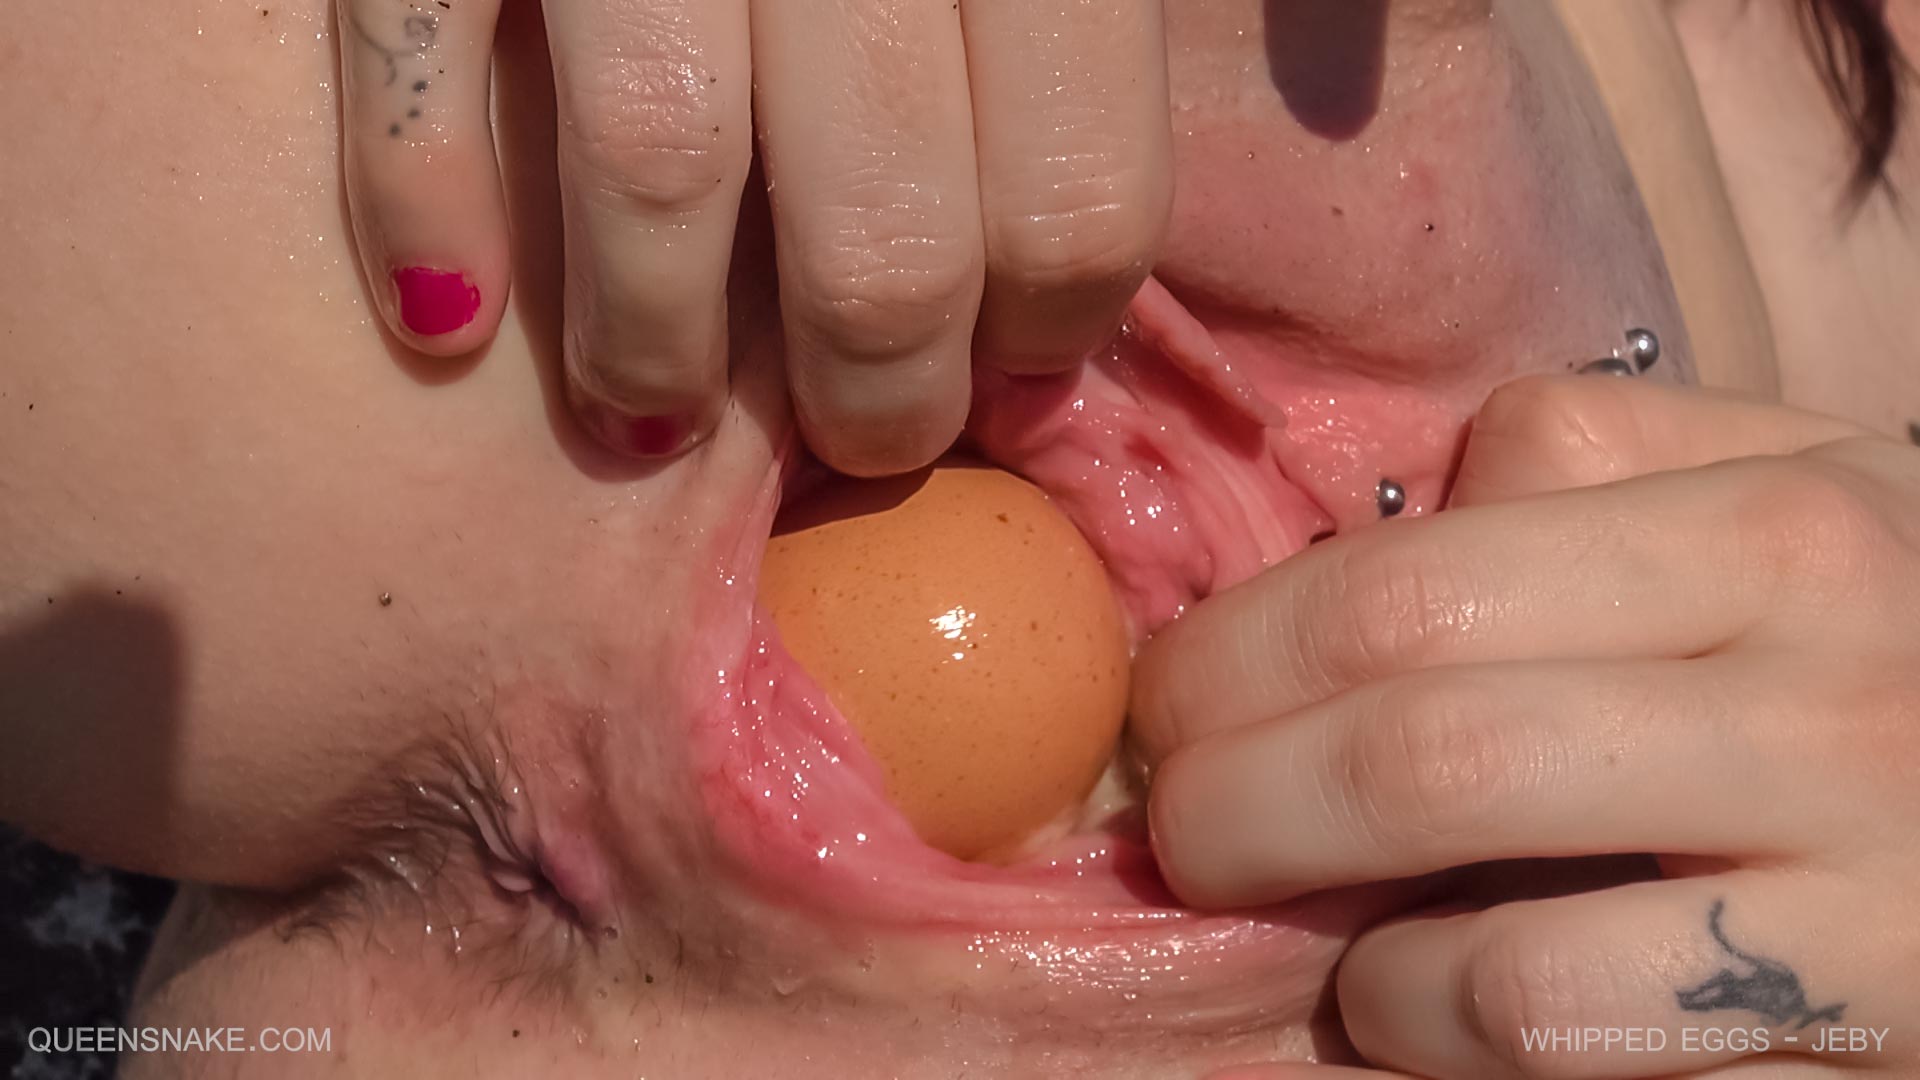 Eggs vagina